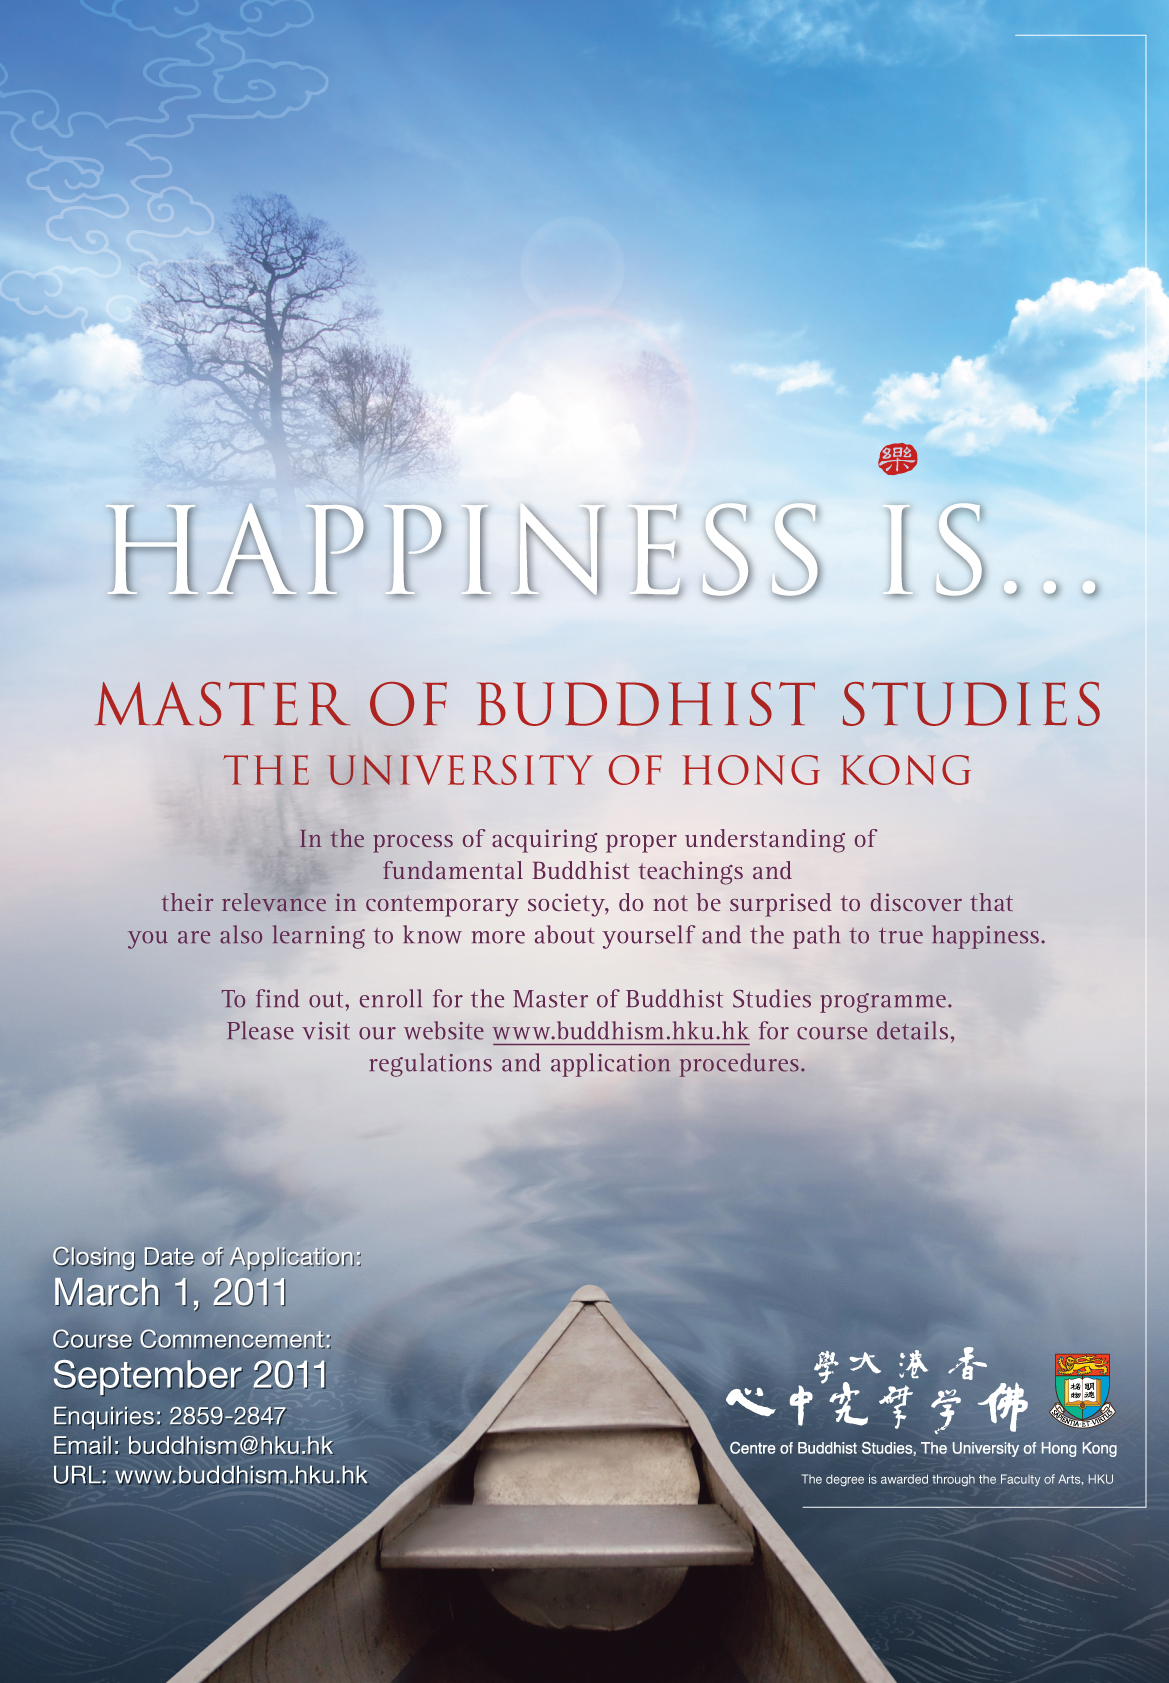 Master of Buddhist Studies 2011-12